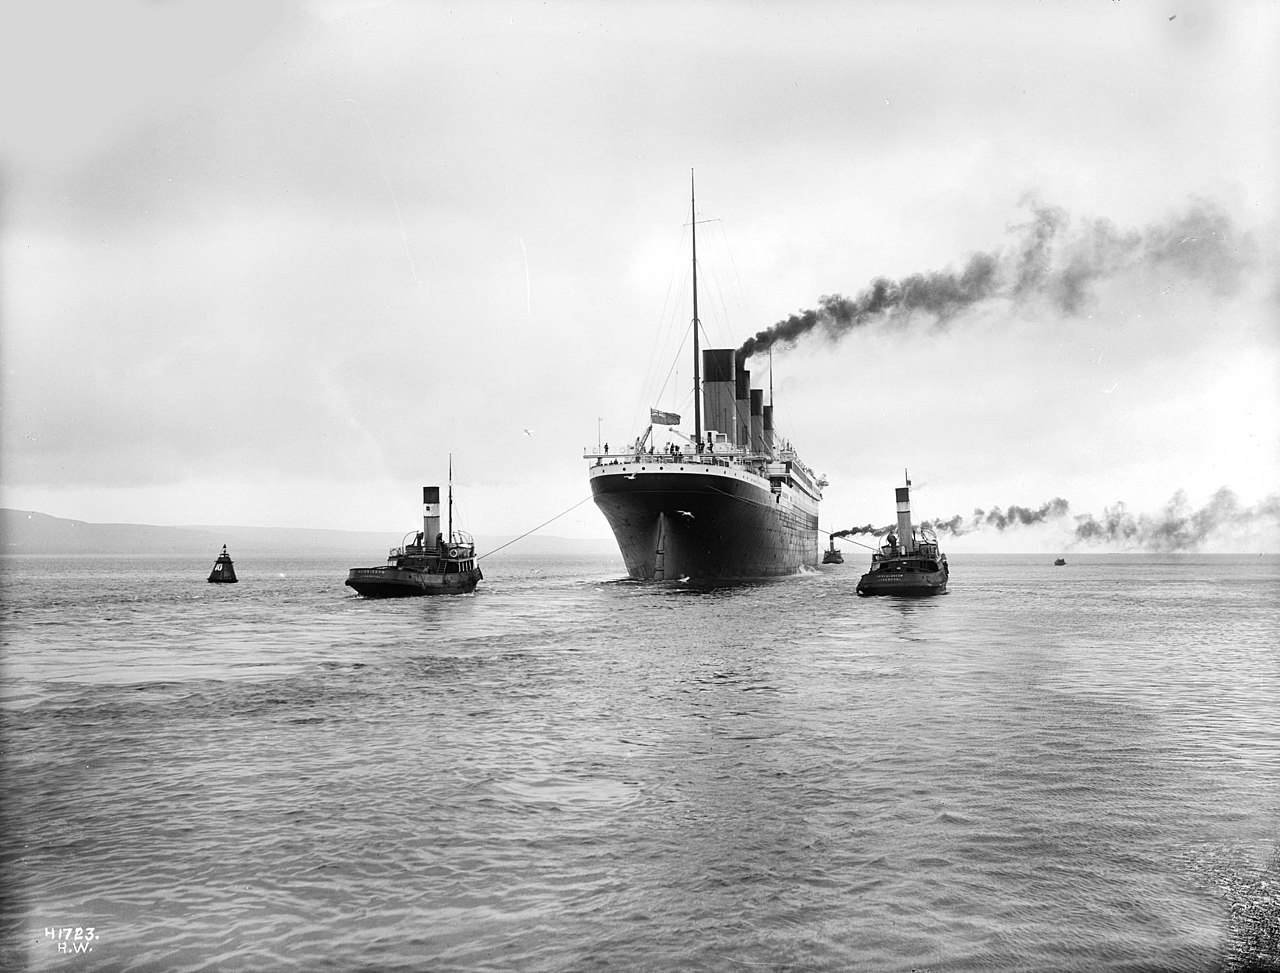 Rahasia gelap dan beberapa fakta yang tidak banyak diketahui di balik bencana Titanic 4